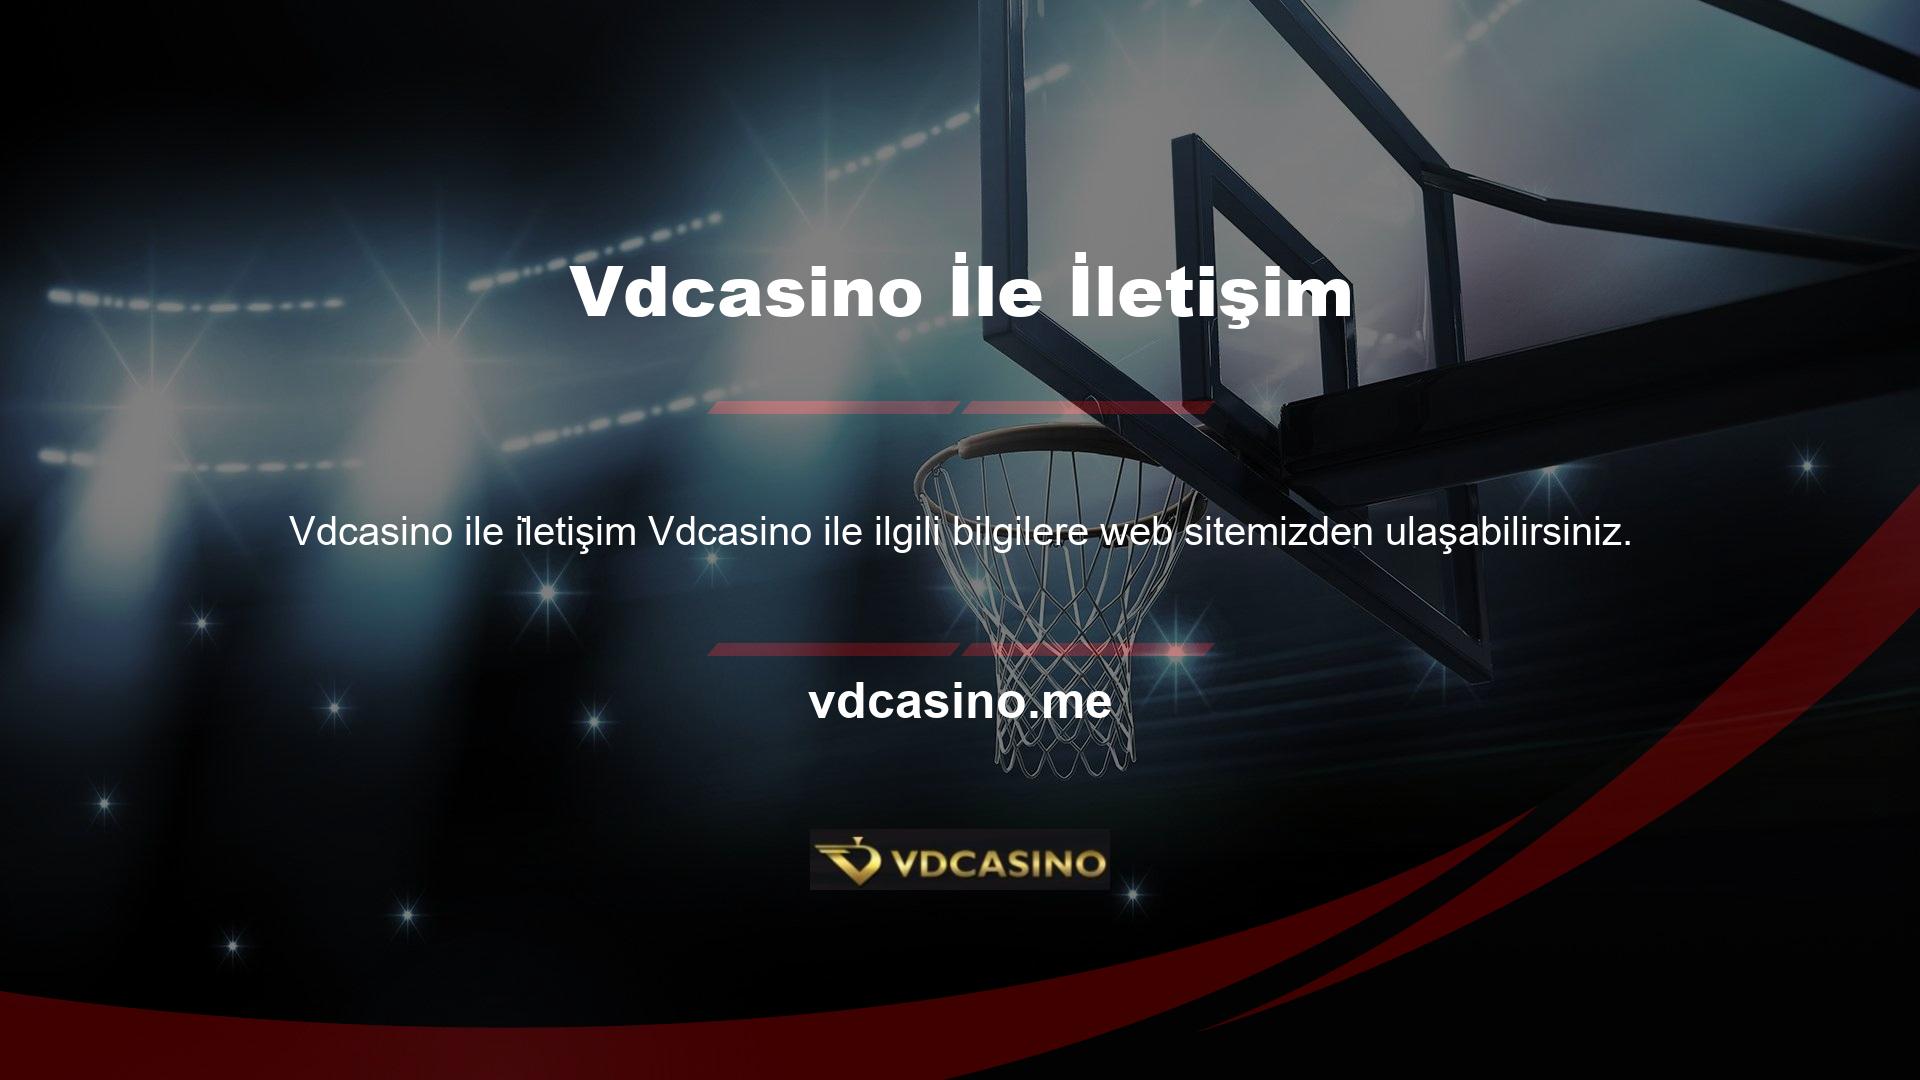 Vdcasino giriş adresi, Vdcasino bonusu, Vdcasino finansal süreci gibi çoğu bilgi web sitesinde bulunabilir